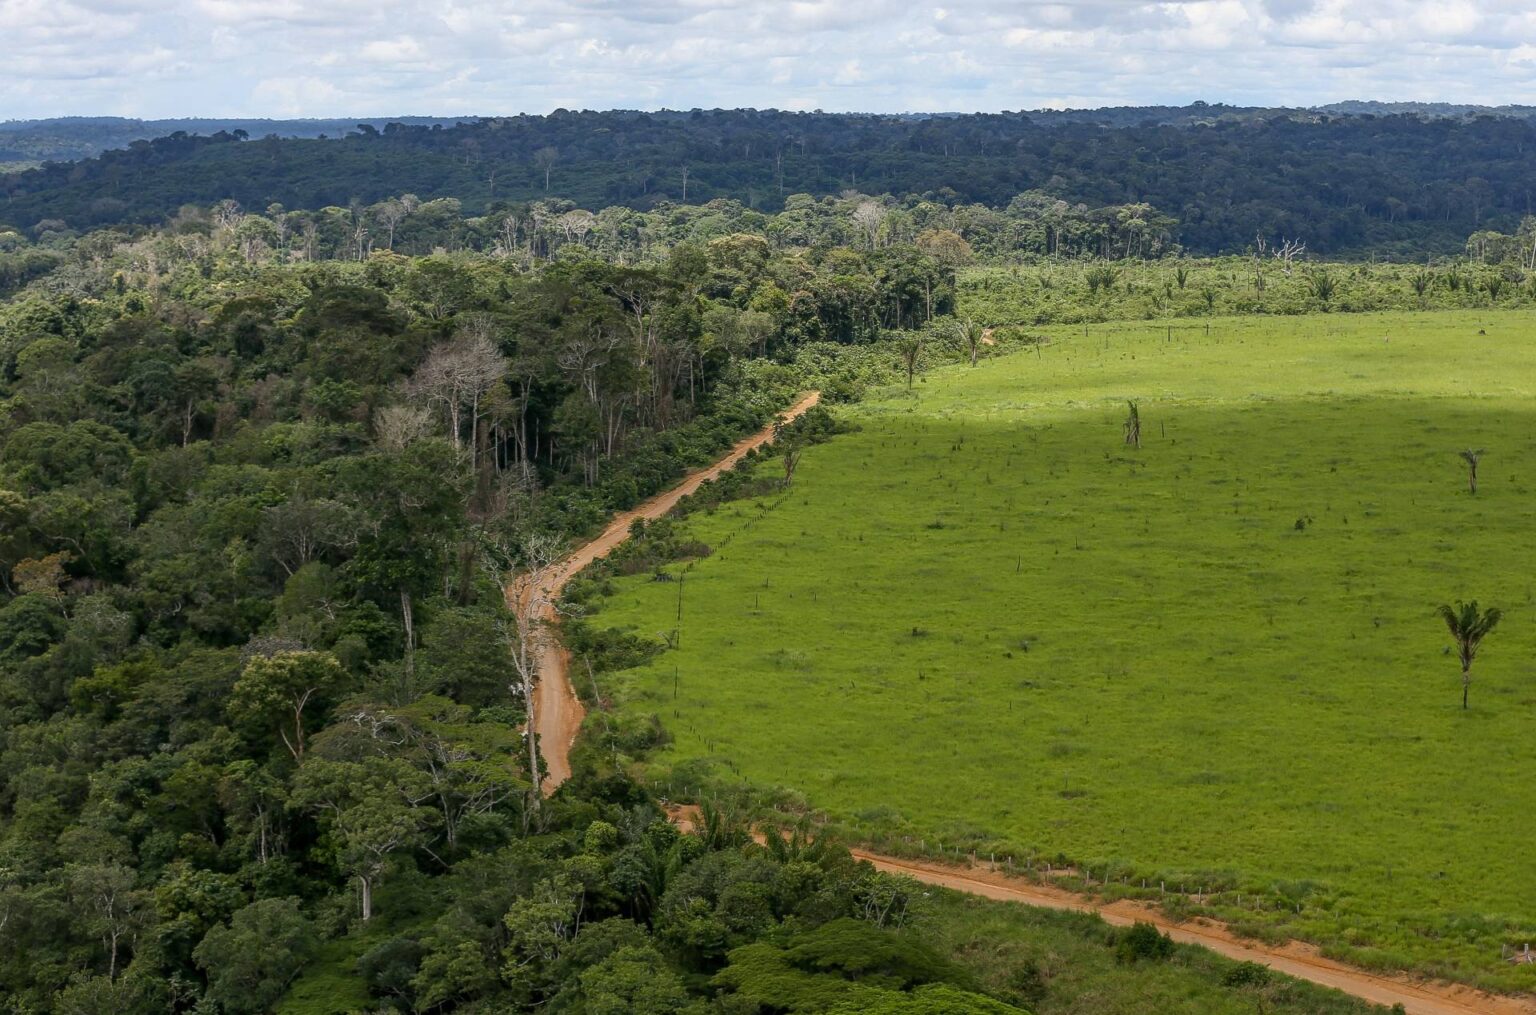 Brasil pode reduzir emissões drasticamente com soluções baseadas na natureza, aponta estudo